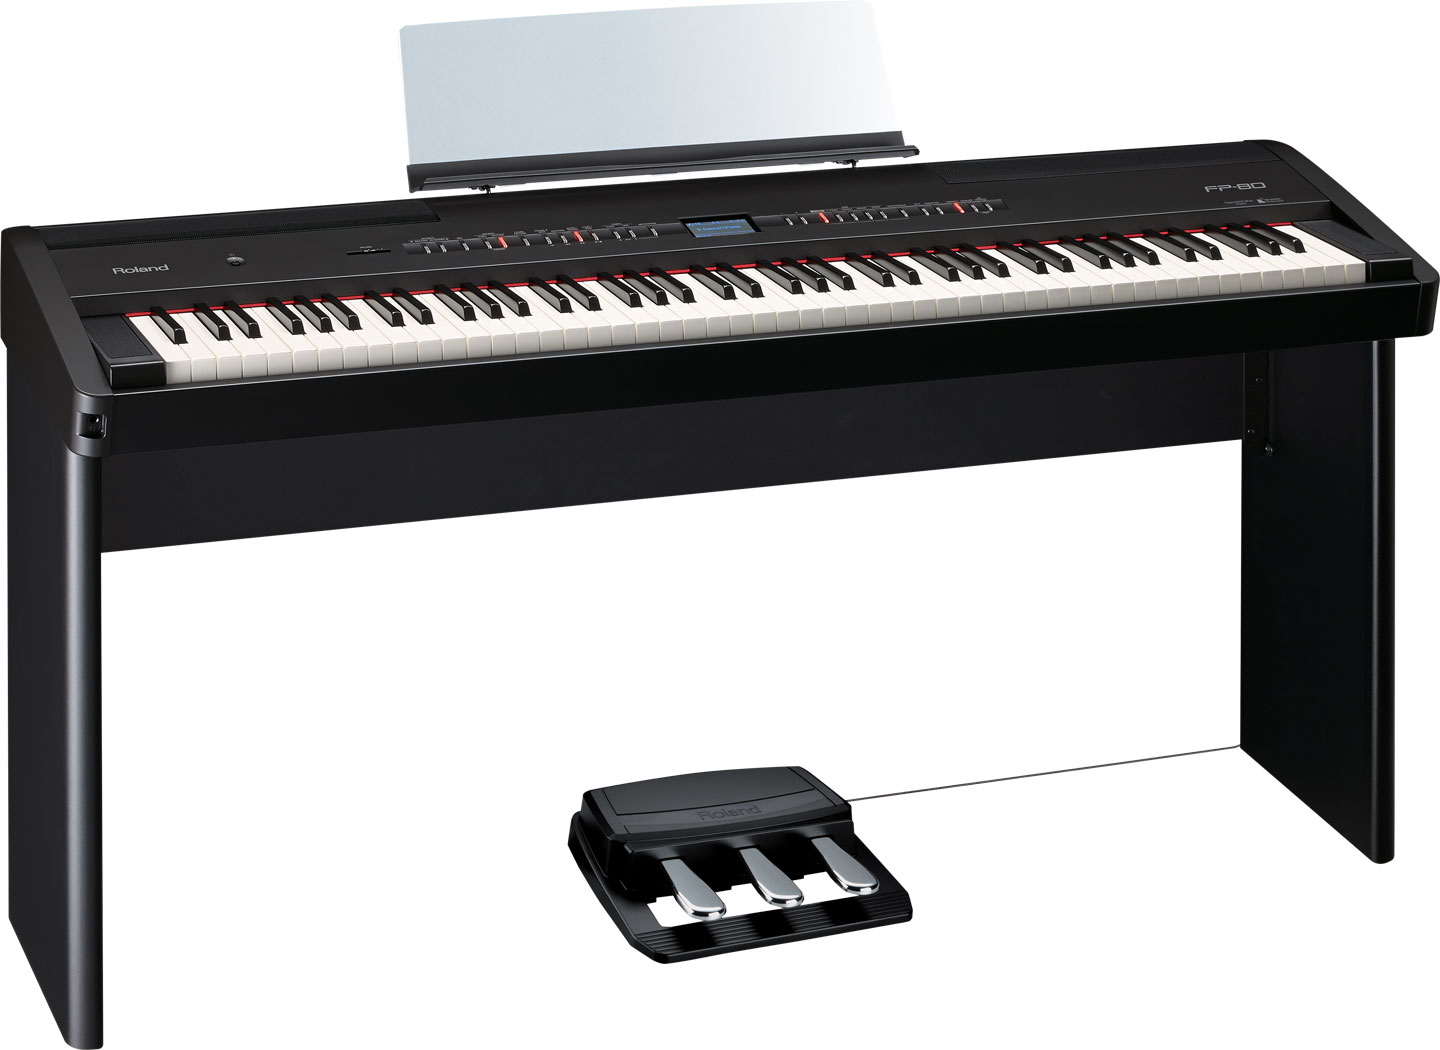 罗兰 Roland FP-80 88键 电钢琴  舞台电钢琴